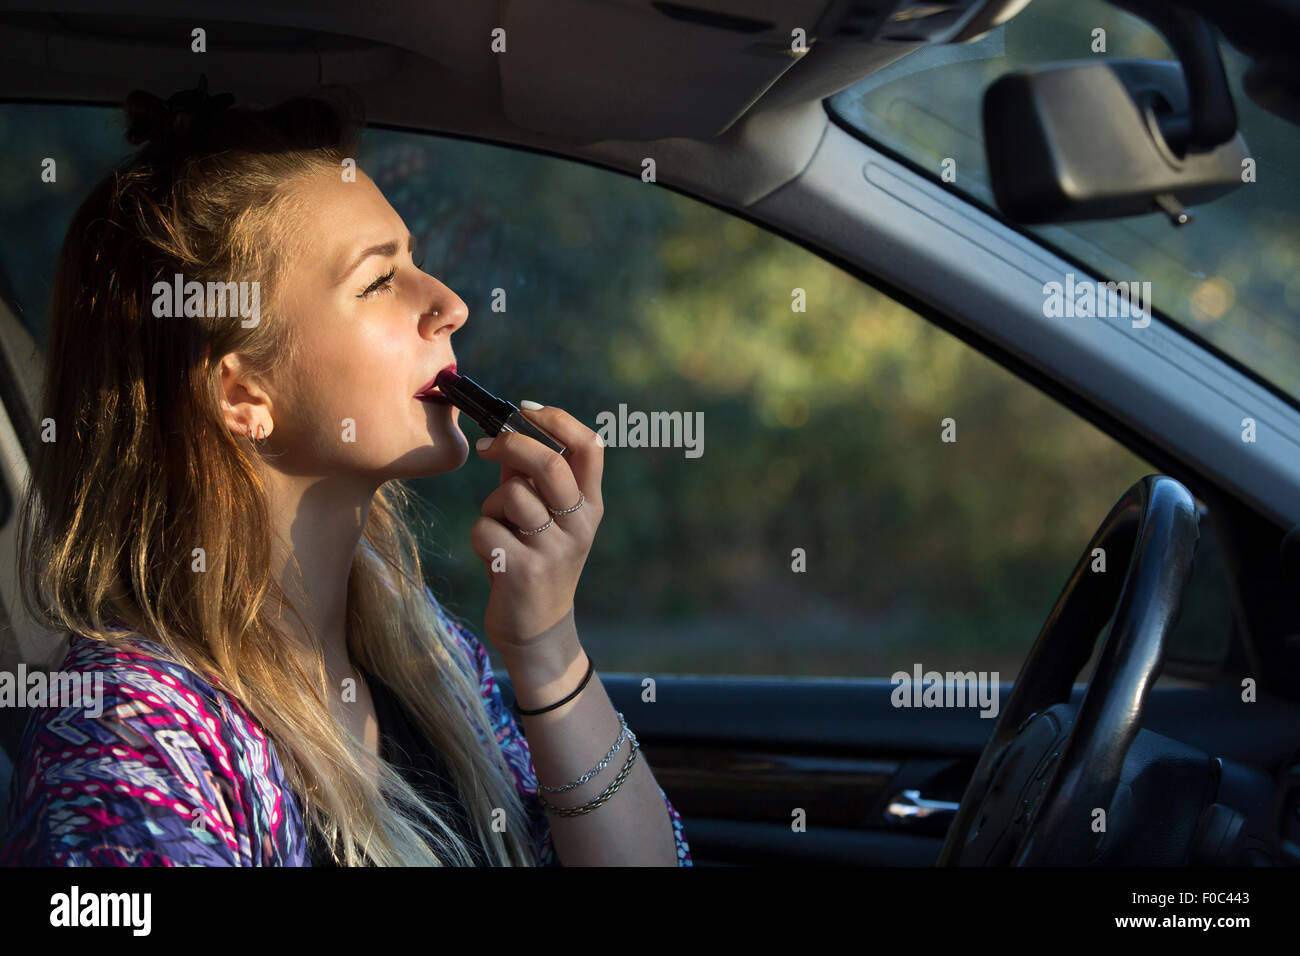 Frau im Auto mit Visier Schminkspiegel Make-up aufzulegen Stockfotografie -  Alamy